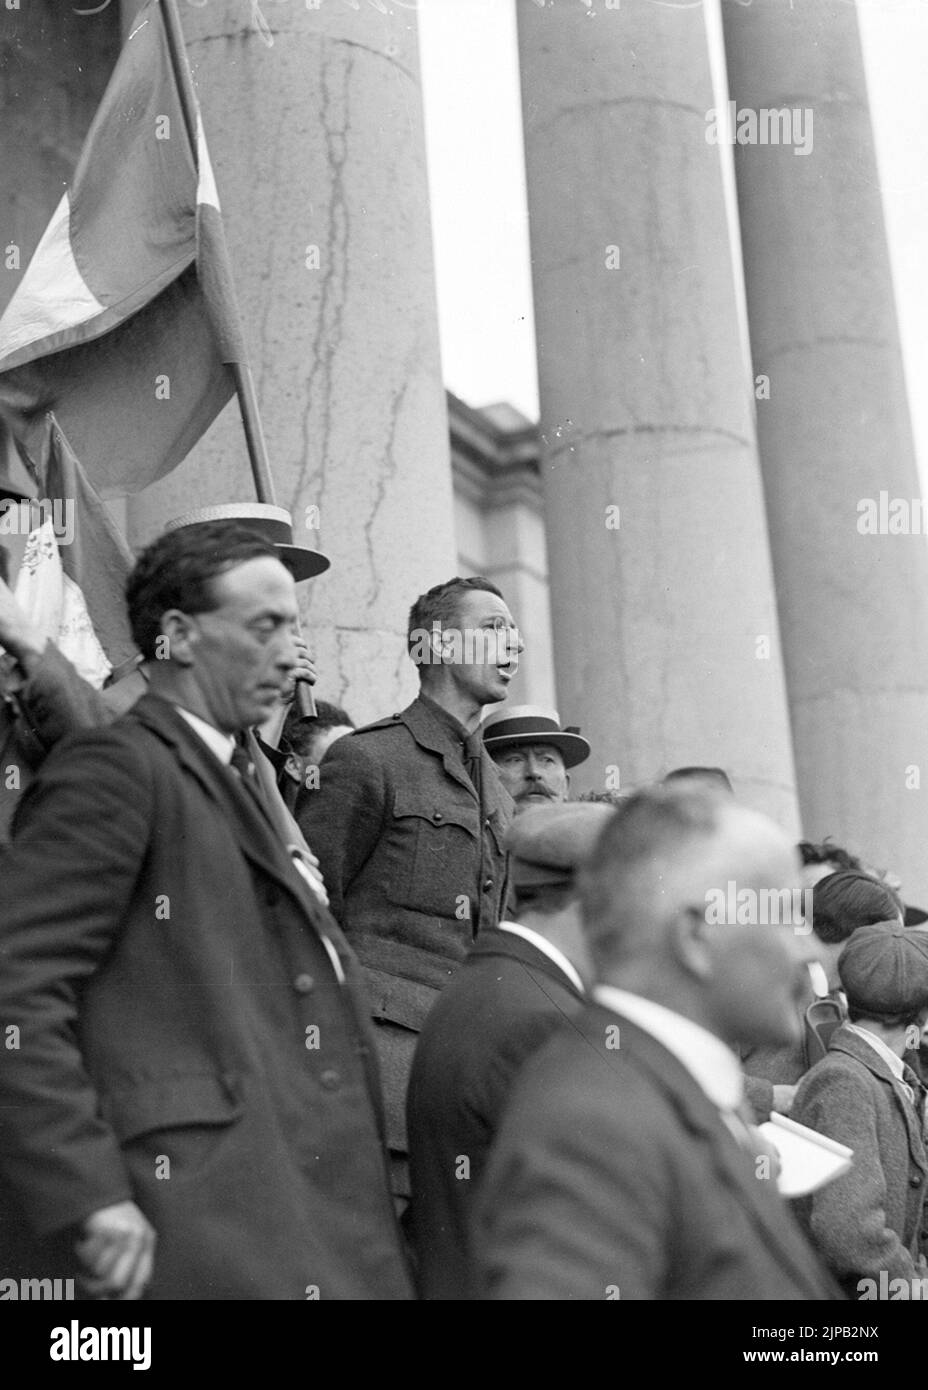 Éamon de Valera, le leader politique et révolutionnaire irlandais, s'adressant à une foule sur les marches du palais de justice d'Ennis, comté de Clare, en juillet 1917 Banque D'Images